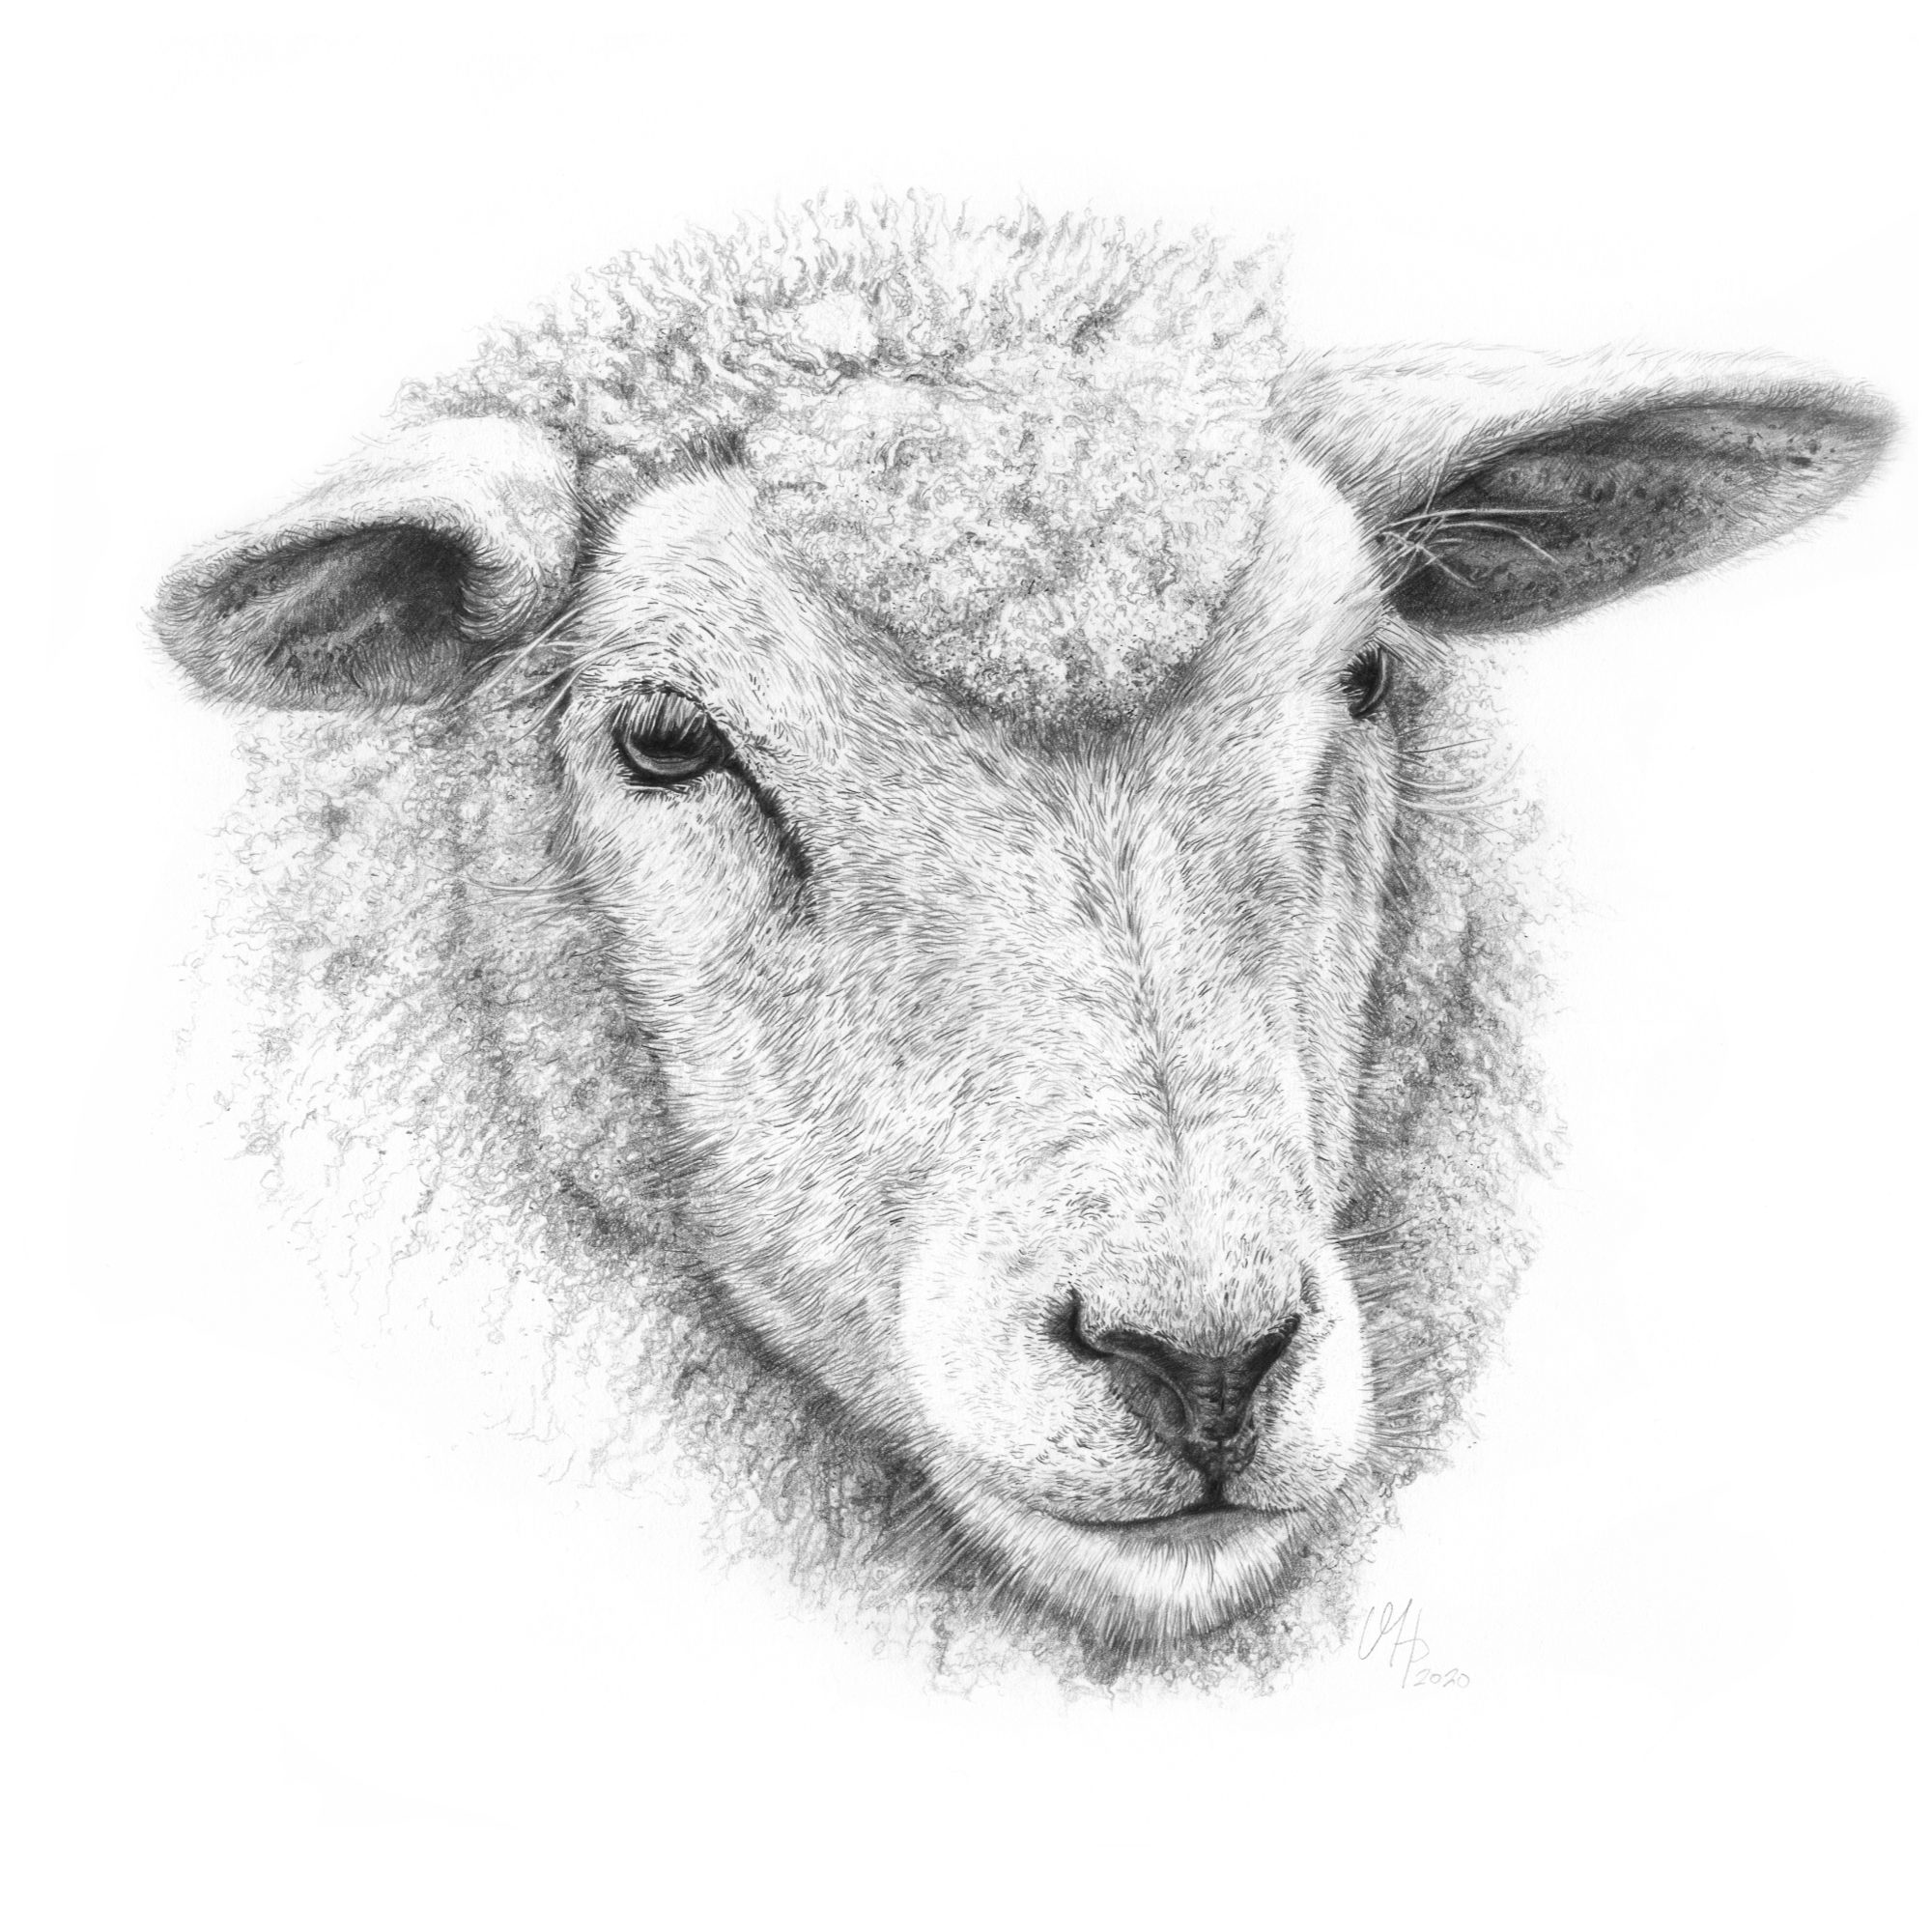 Tierportrait Schaf aus Eiderstedt